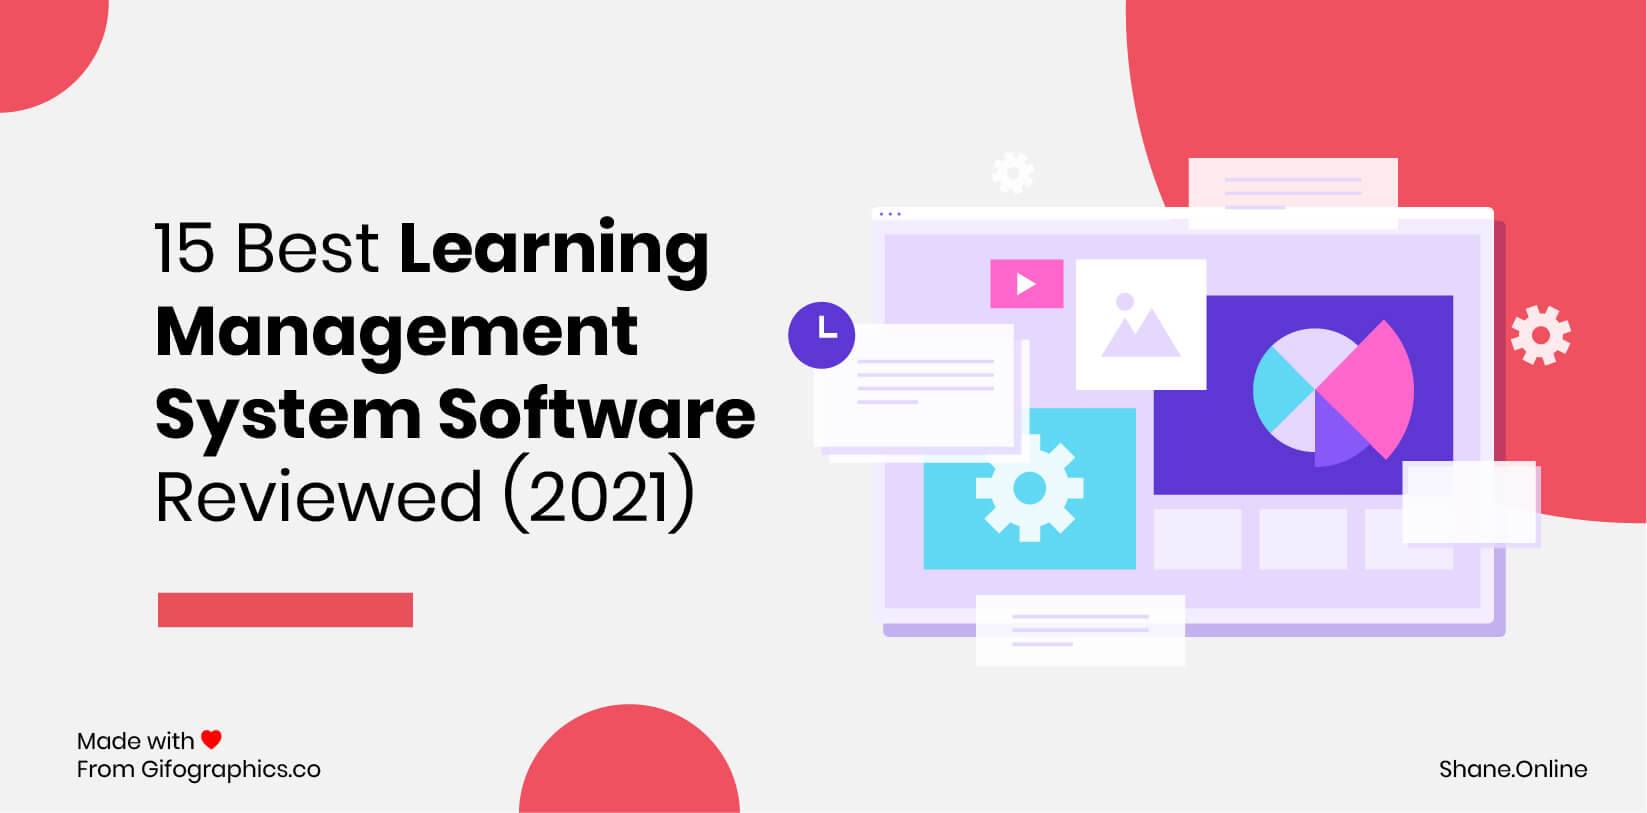 15 meilleurs logiciels de système de gestion de l'apprentissage examinés (2021)